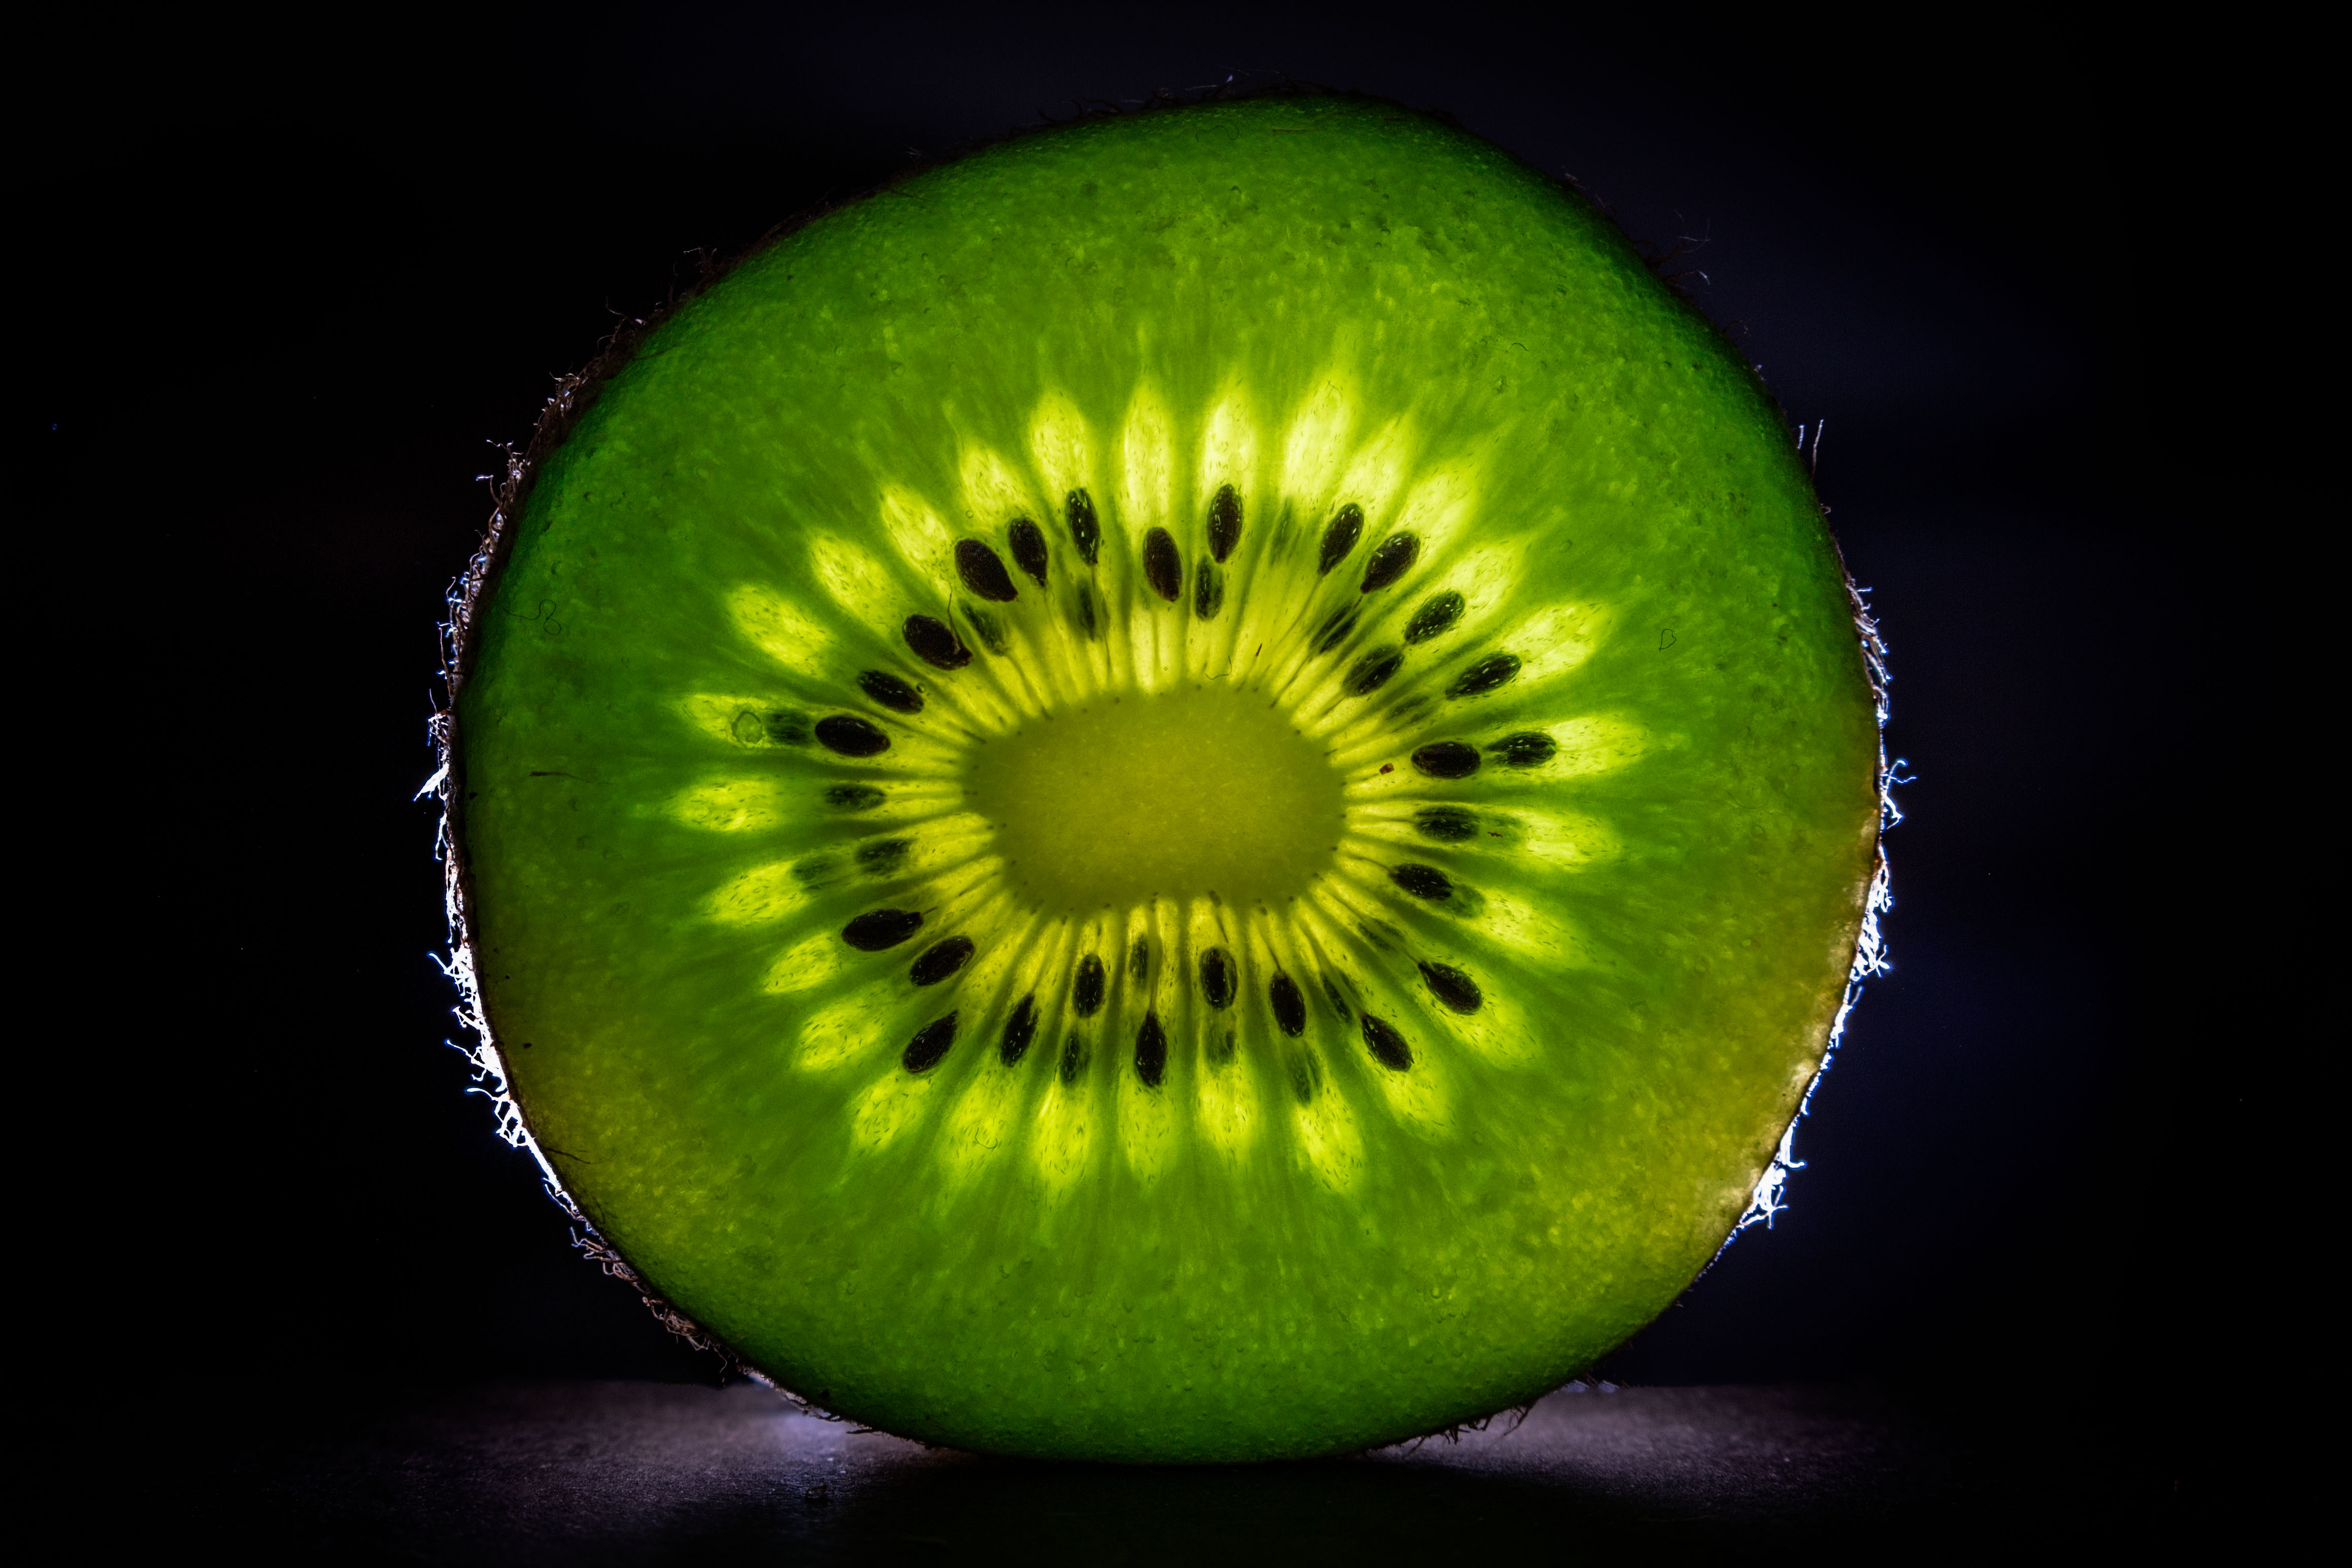 Free photo Green kiwi slice on black background